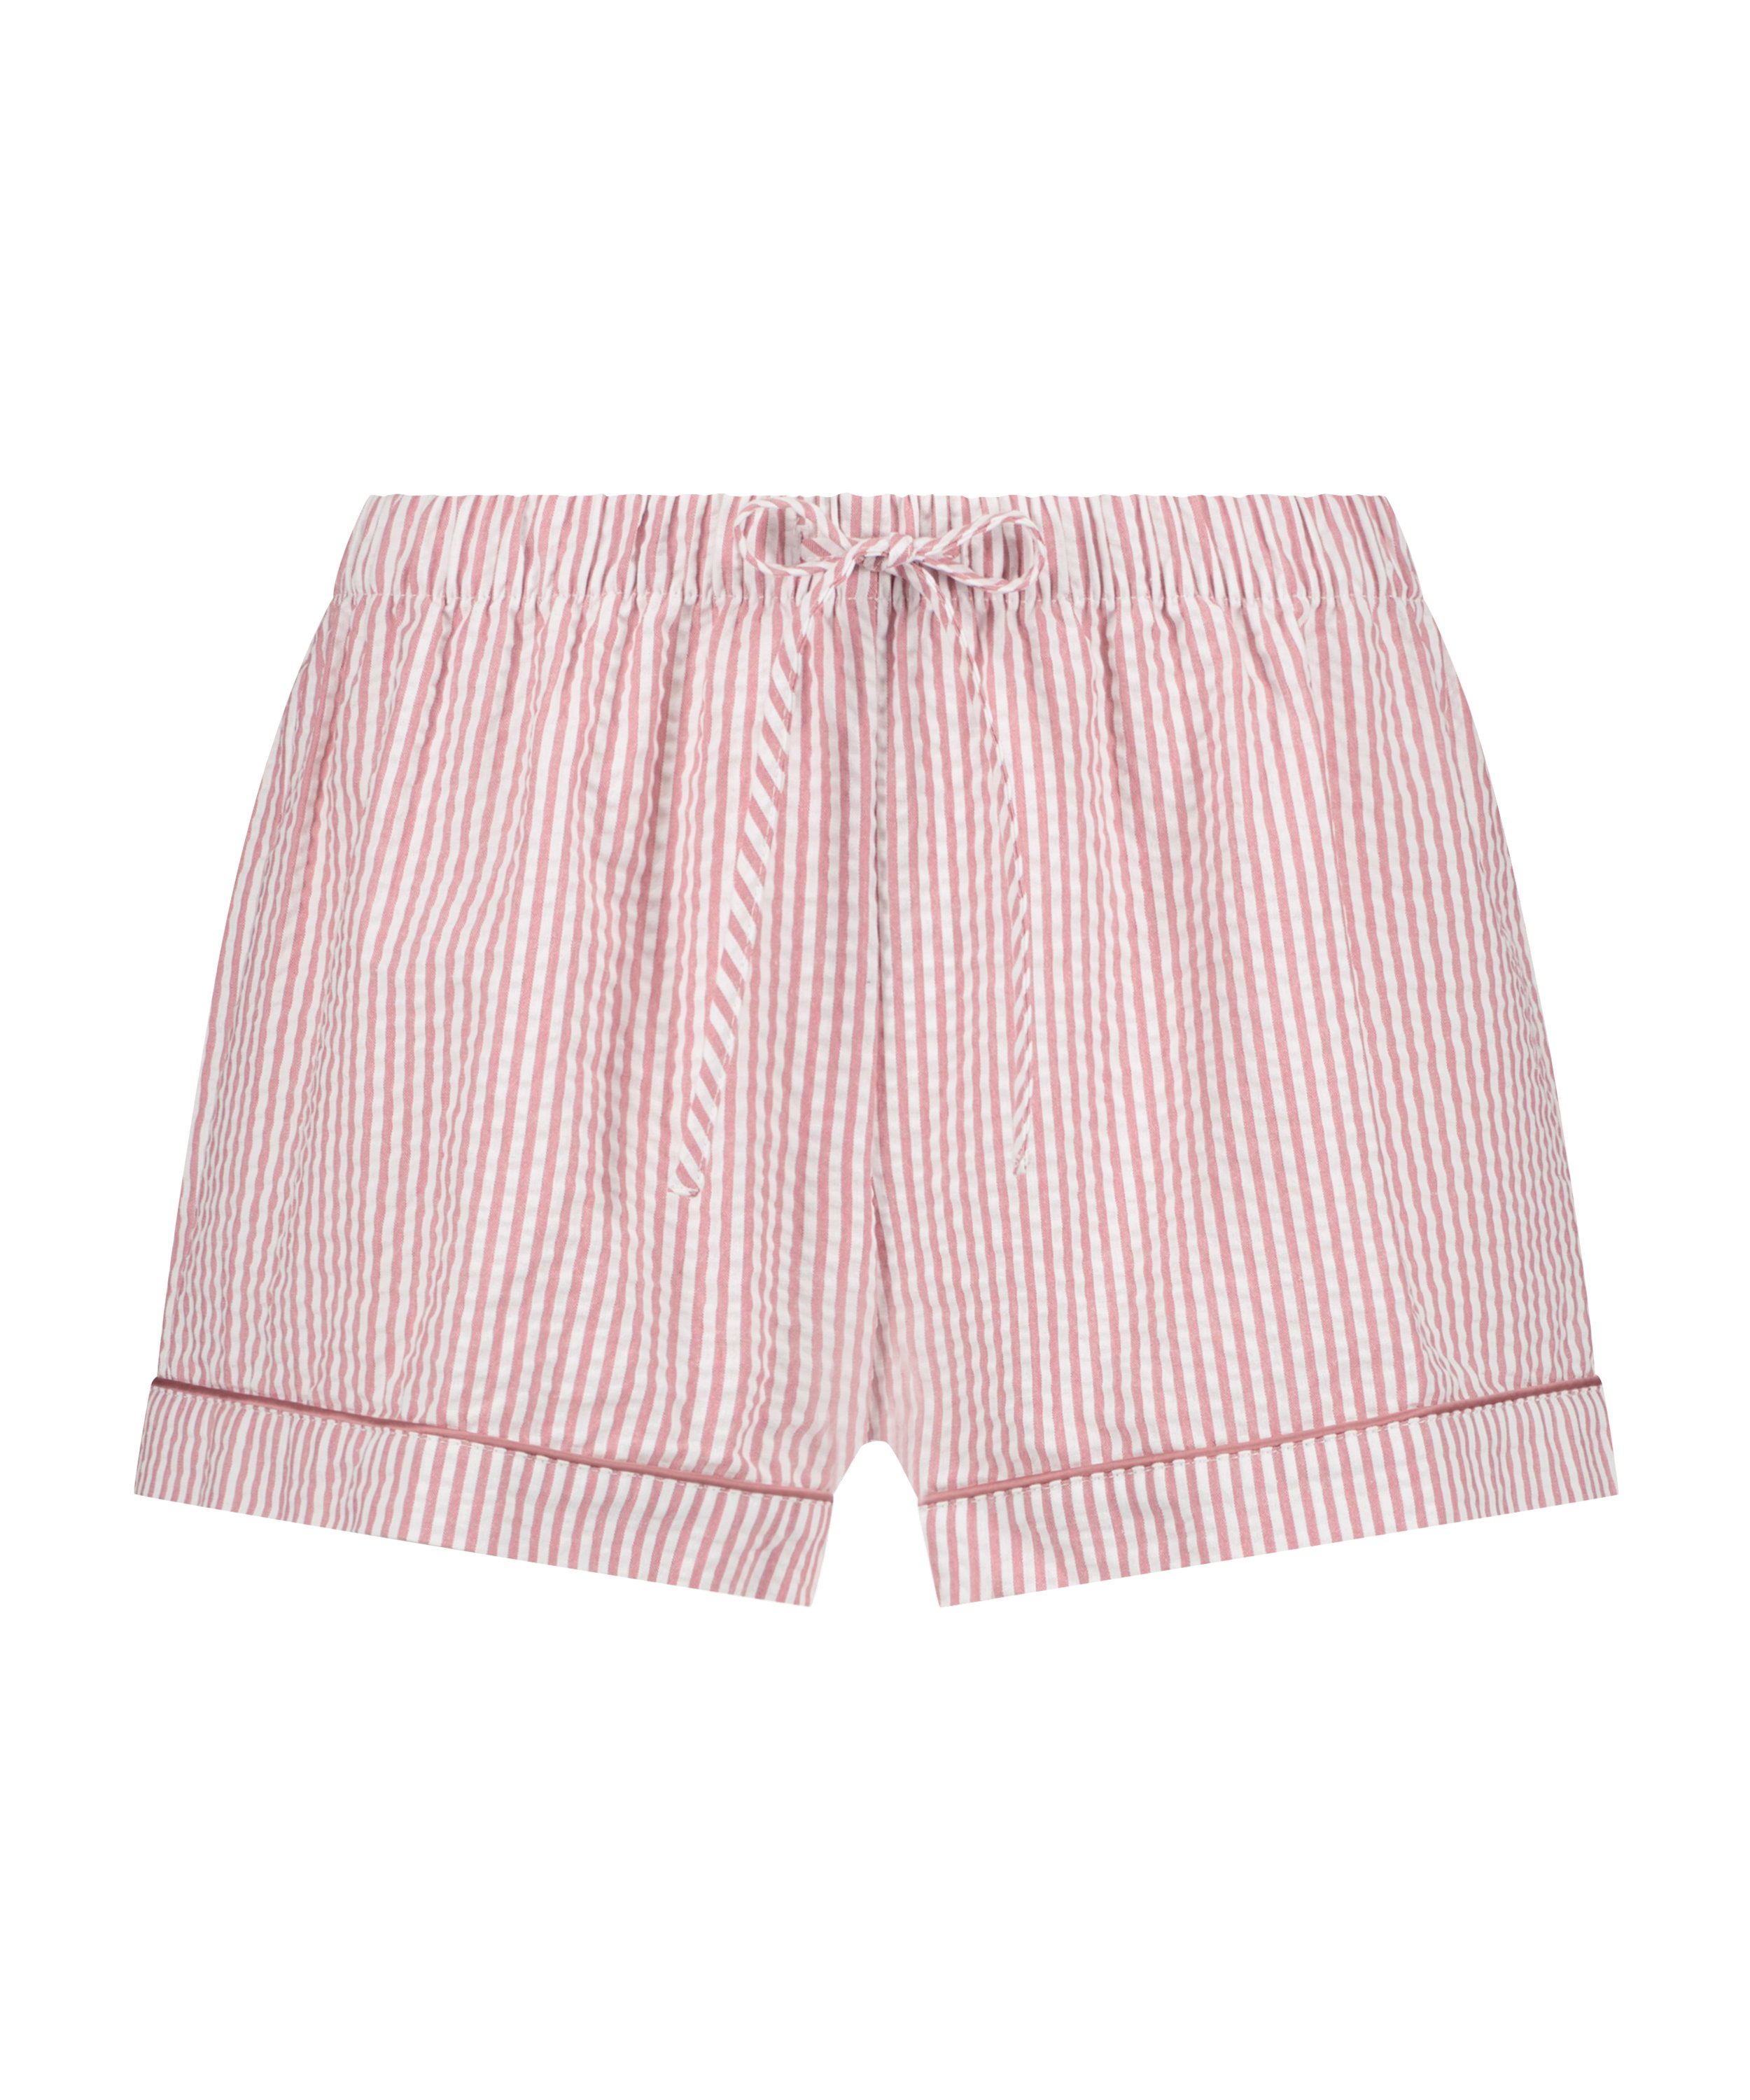 Cotton shorts, Pink, main